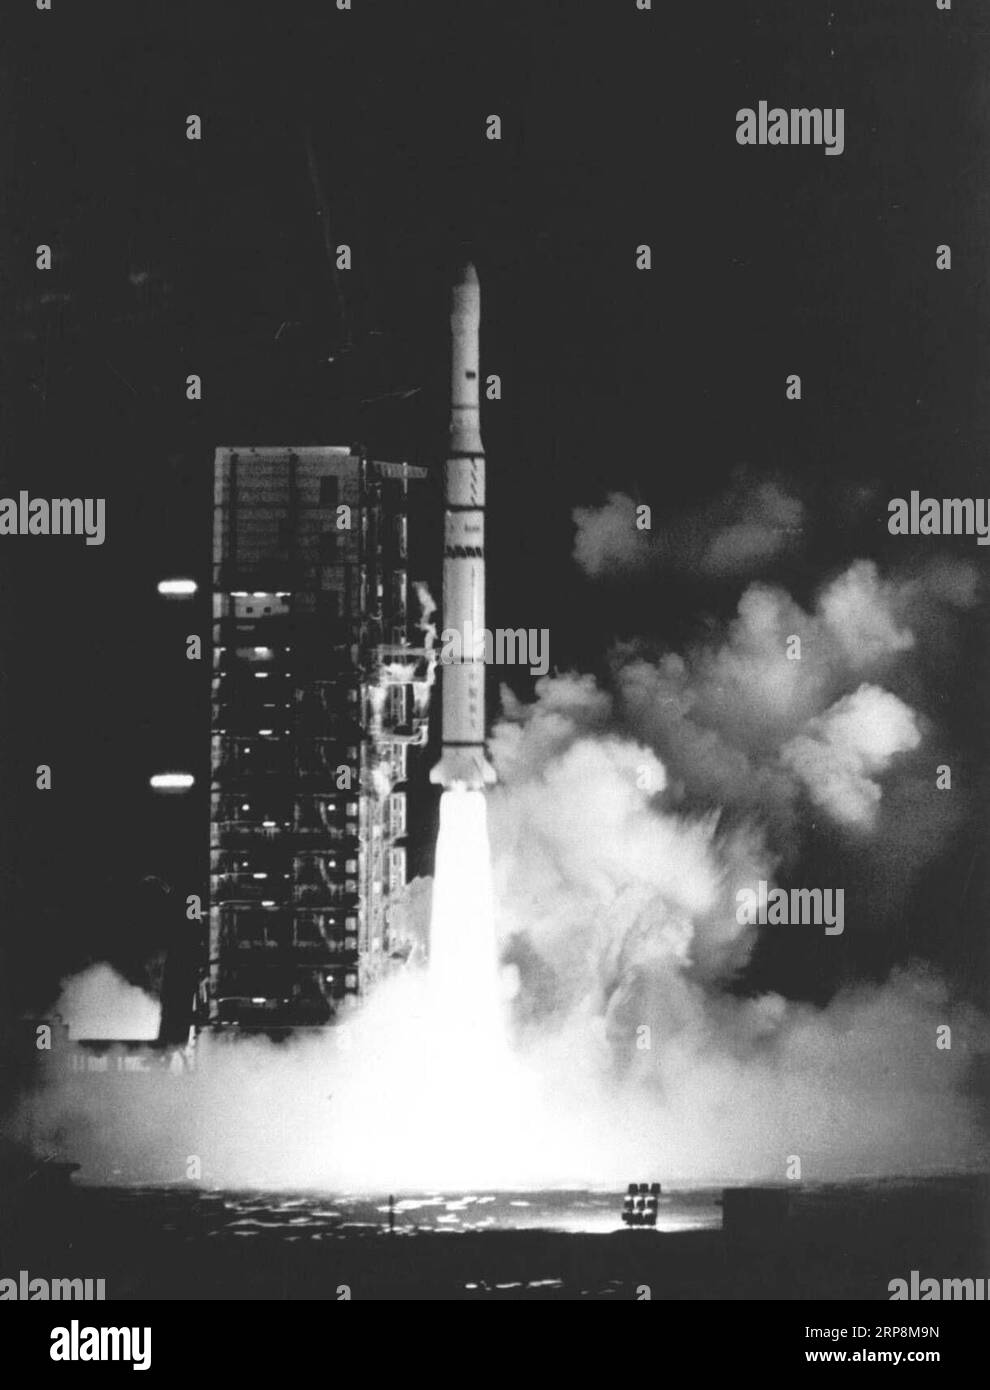 (190311) -- PEKING, 11. März 2019 (Xinhua) -- der Telekommunikationssatellit Asiasat 1, der von einer chinesischen Trägerrakete des Typs Long March 3 getragen wird, springt am 7. April 1990 vom Xichang Satellite Launch Center in Xichang in der südwestlichen chinesischen Provinz Sichuan ab. Mit einer langen März-3B-Rakete, die am 10. März 2019 einen neuen Kommunikationssatelliten in die Umlaufbahn brachte, vollendete Chinas Trägerraketenserie Long March 300 Starts, nachdem sie seit 1970 mehr als 500 Raumfahrzeuge in den Weltraum geschickt hatte. ZUM SCHLUSS: 4. LD-Writethru-China Fokus: Chinas lange Marschraketen vollenden 300 Starts (Xinhua) CHINA-LONG MAR Stockfoto